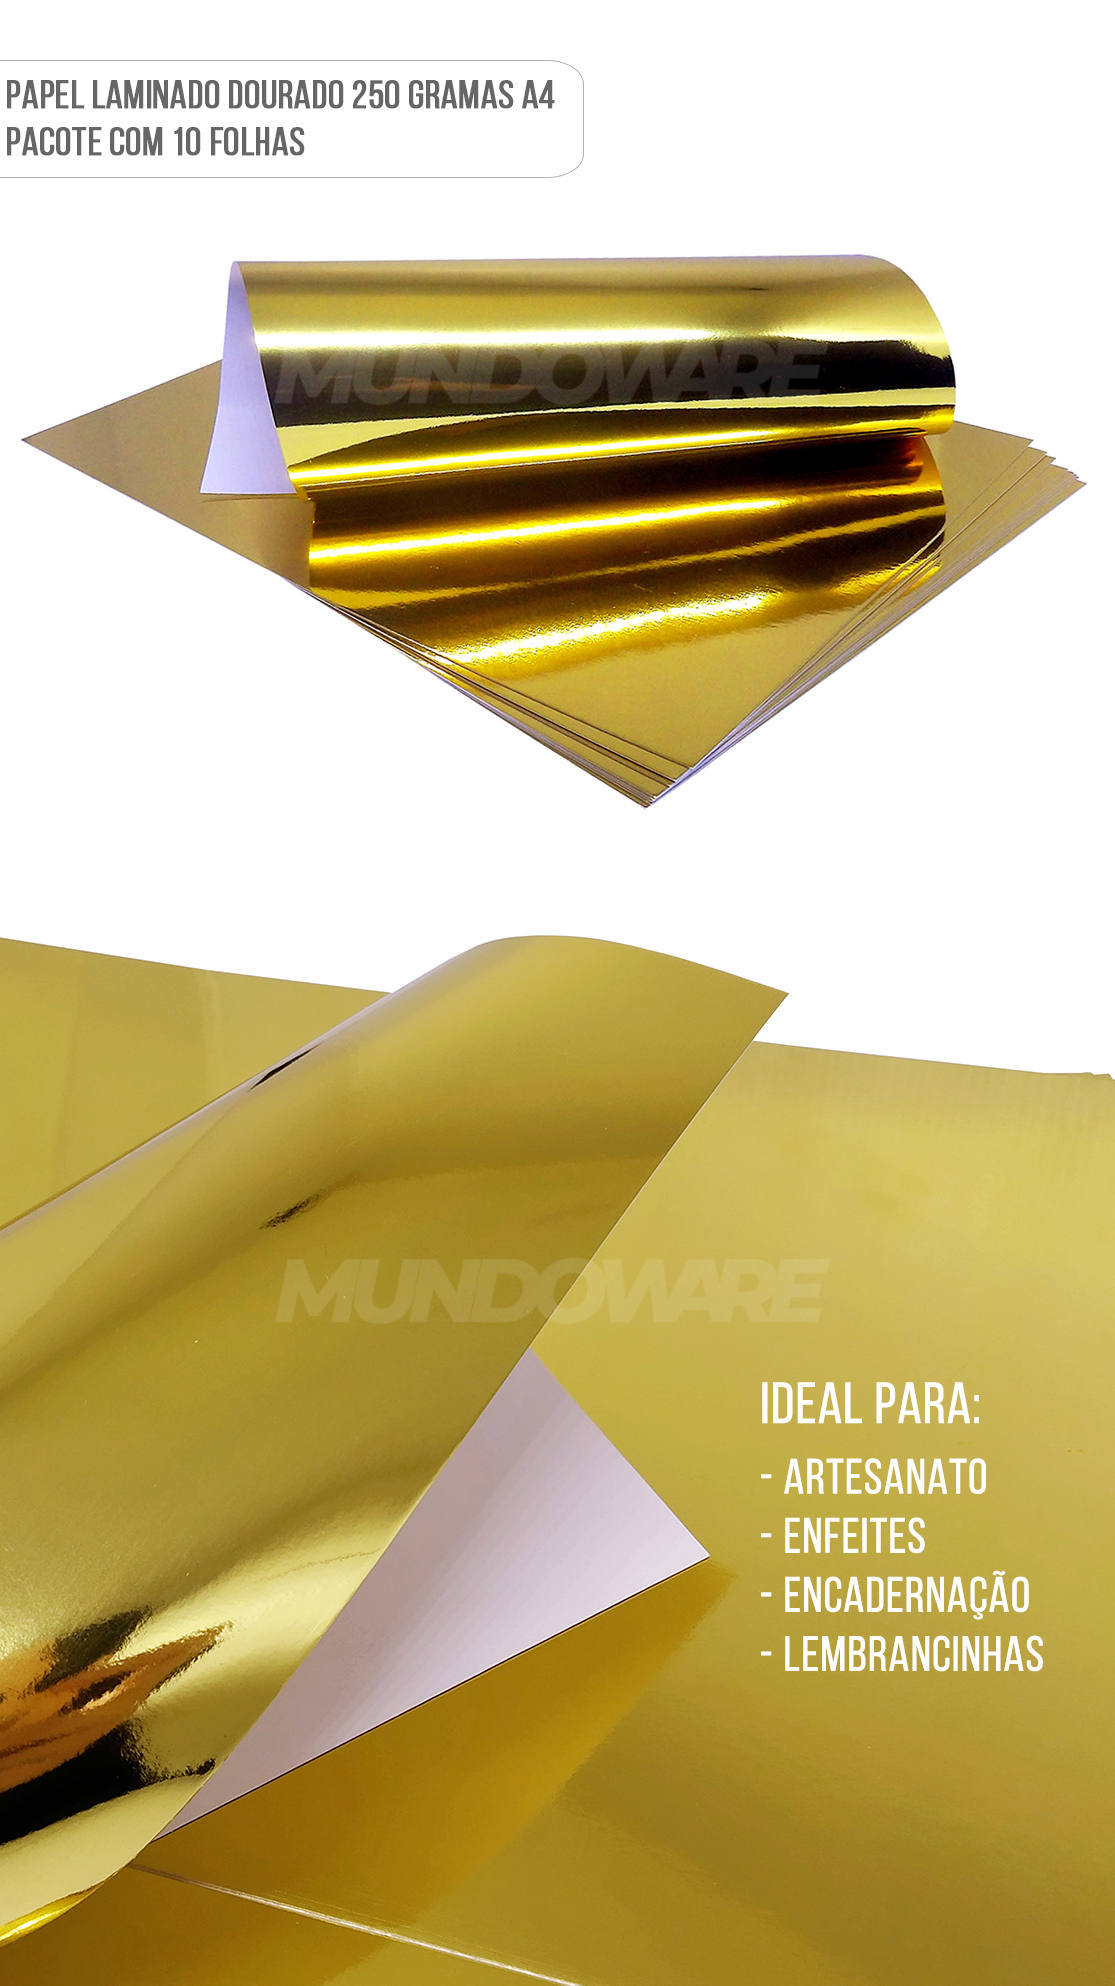 Papel Laminado Dourado A4 250g para Artesanato Enfeites Lembrancinhas Pacote com 10 Folhas